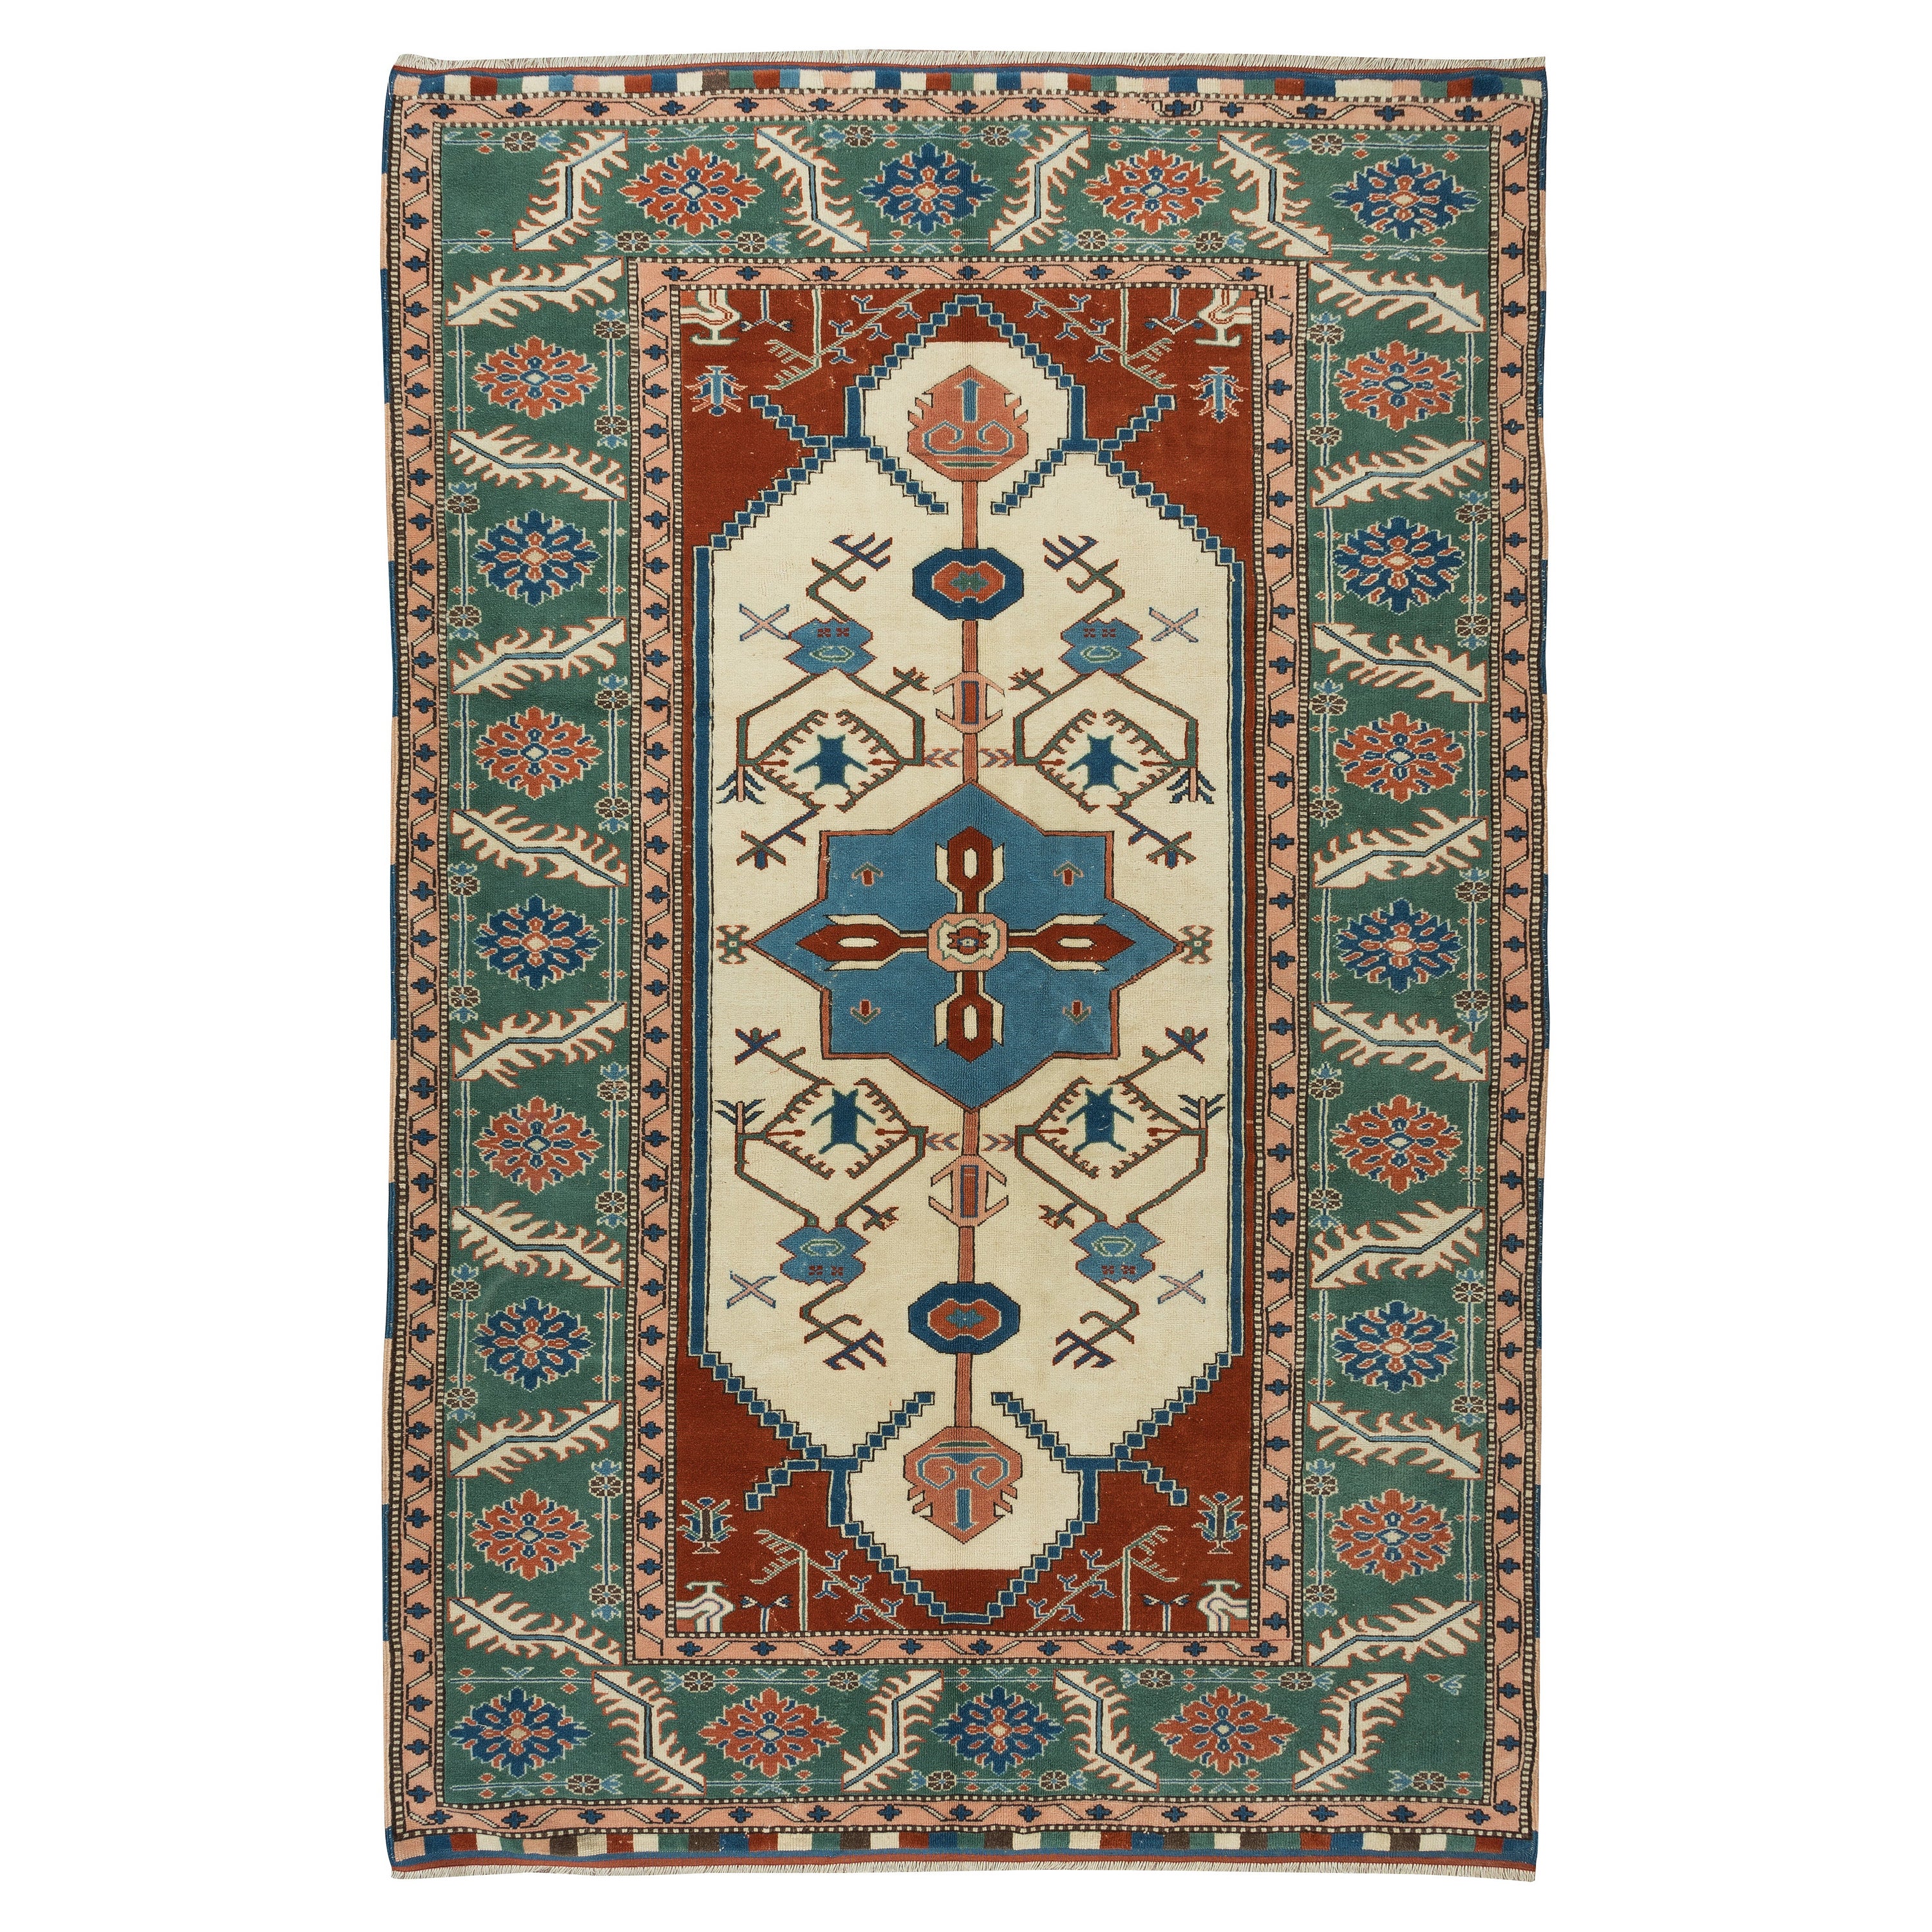 5.6x9 Ft handgefertigter türkischer Vintage-Teppich mit geometrischem Medaillon-Design